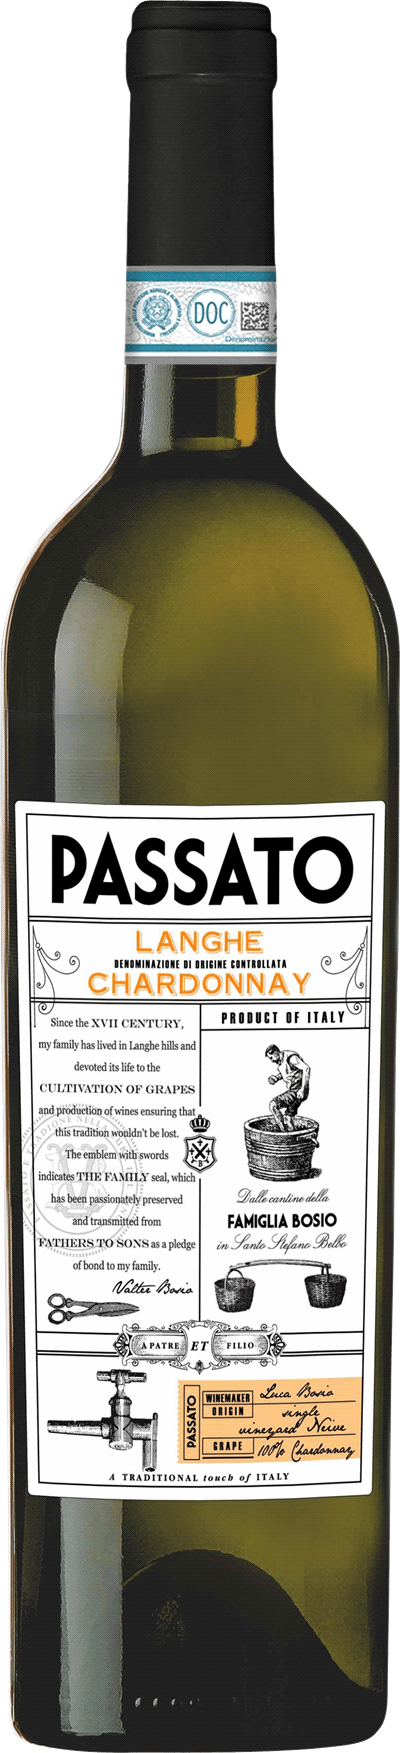 Bosio Passato Langhe Chardonnay, 2020